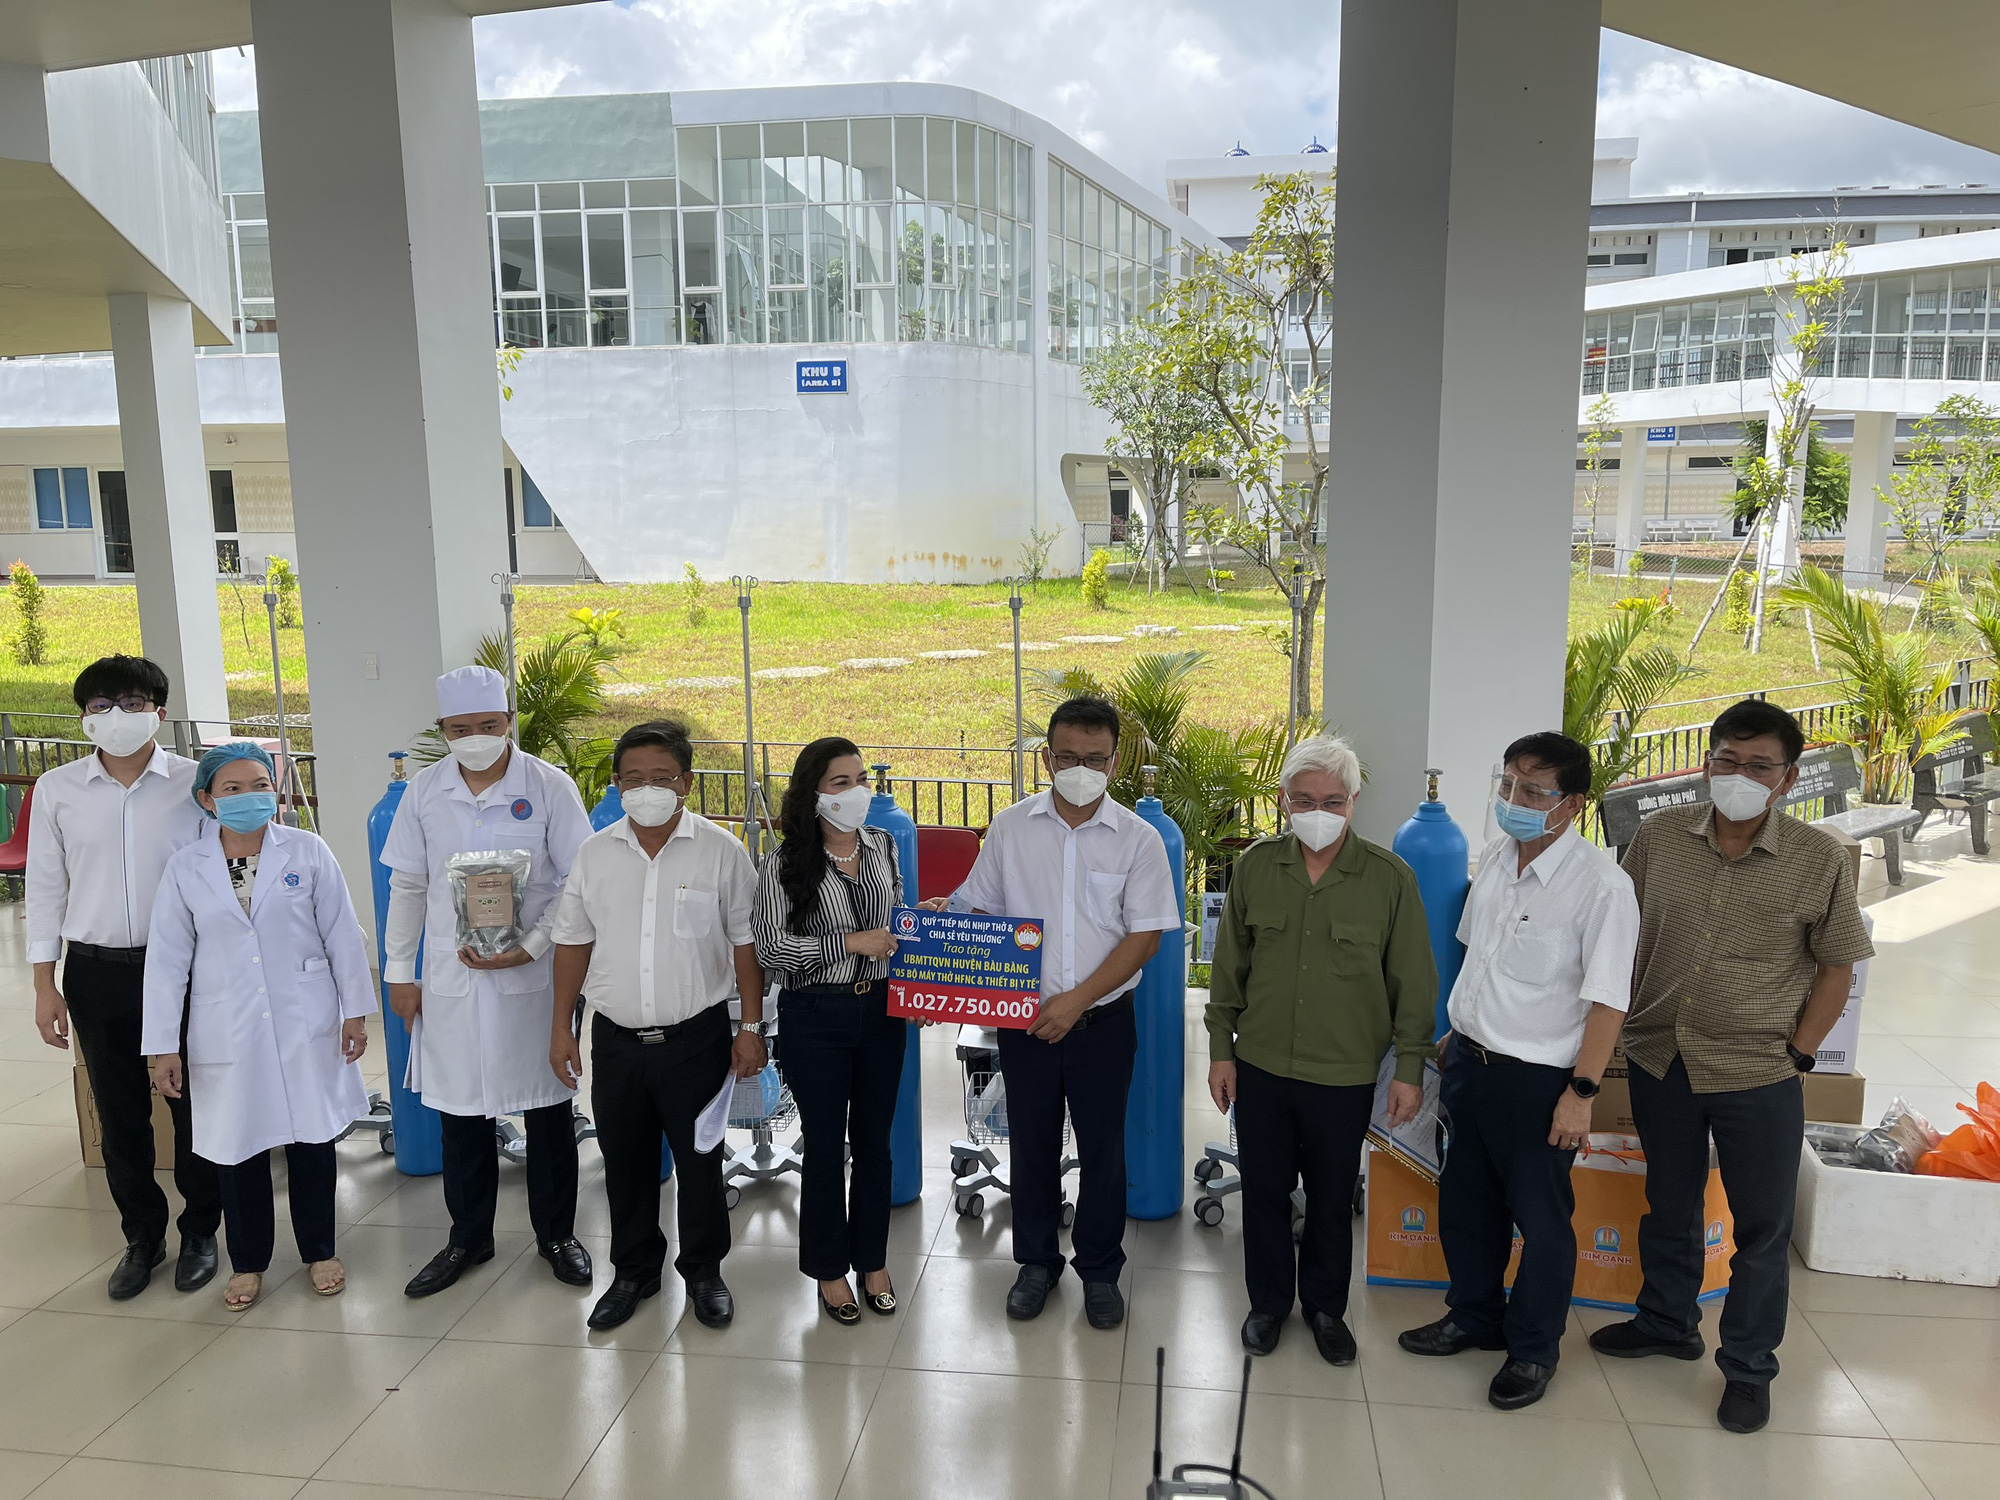 Quỹ từ thiện Kim Oanh hỗ trợ ngành y tế Bình Dương 2,1 tỷ đồng phòng chống Covid-19 - Ảnh 1.